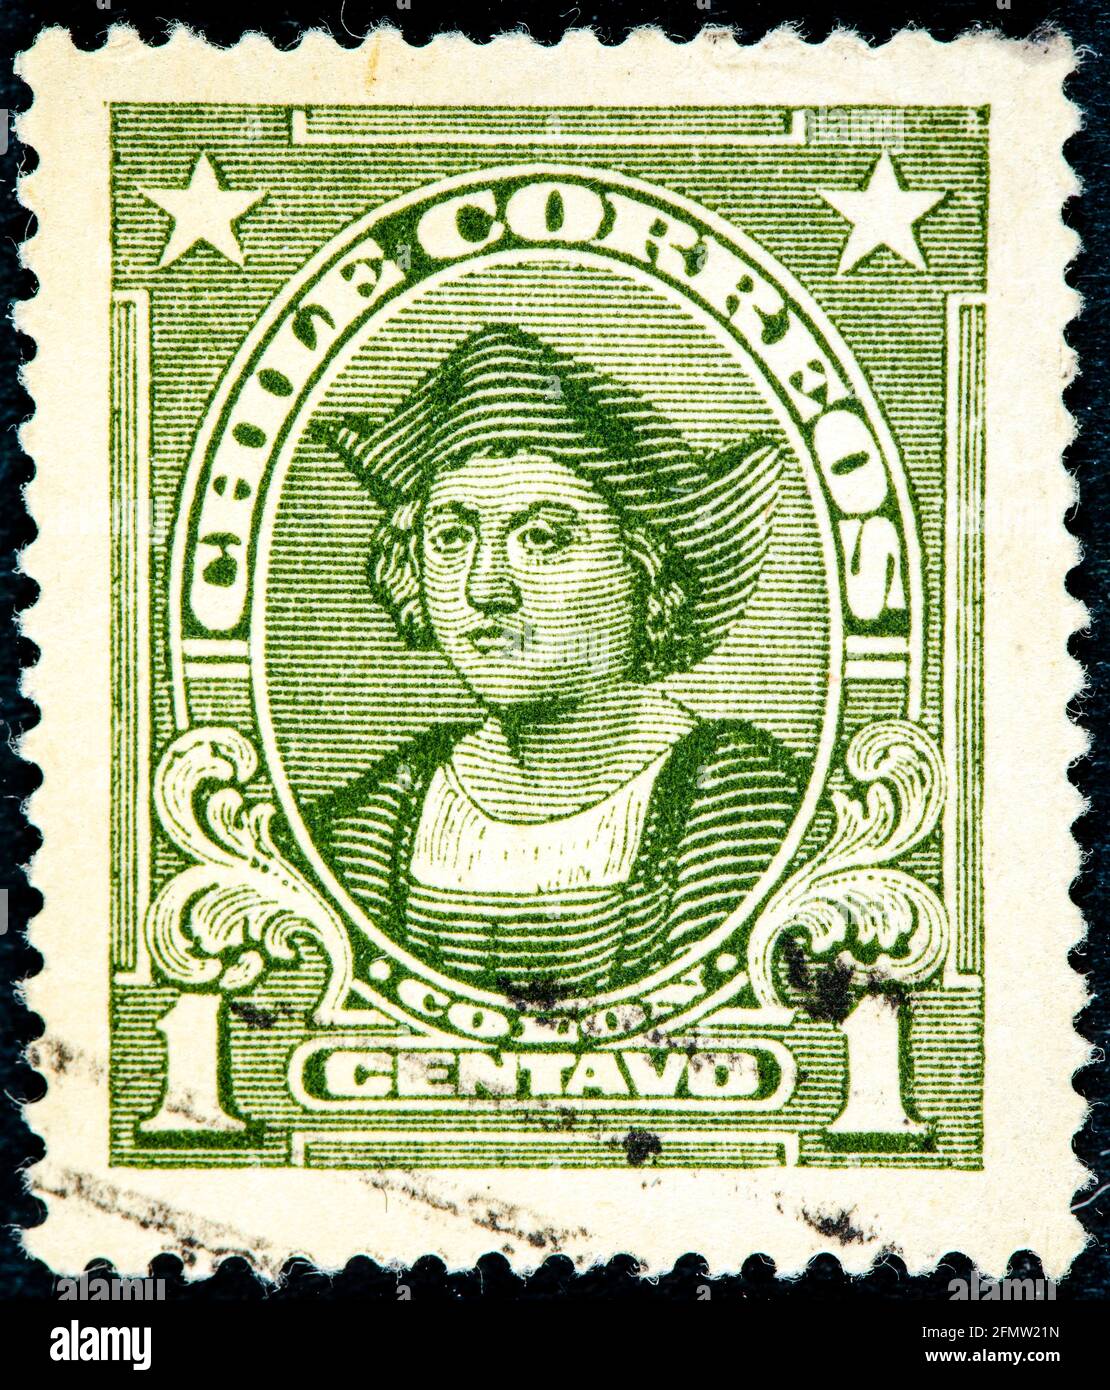 CHILI - VERS 1918: Un timbre imprimé au Chili montre Christophe Colomb, Cristobal Colon, explorateur, colonisateur, navigateur, vers 1918 Banque D'Images